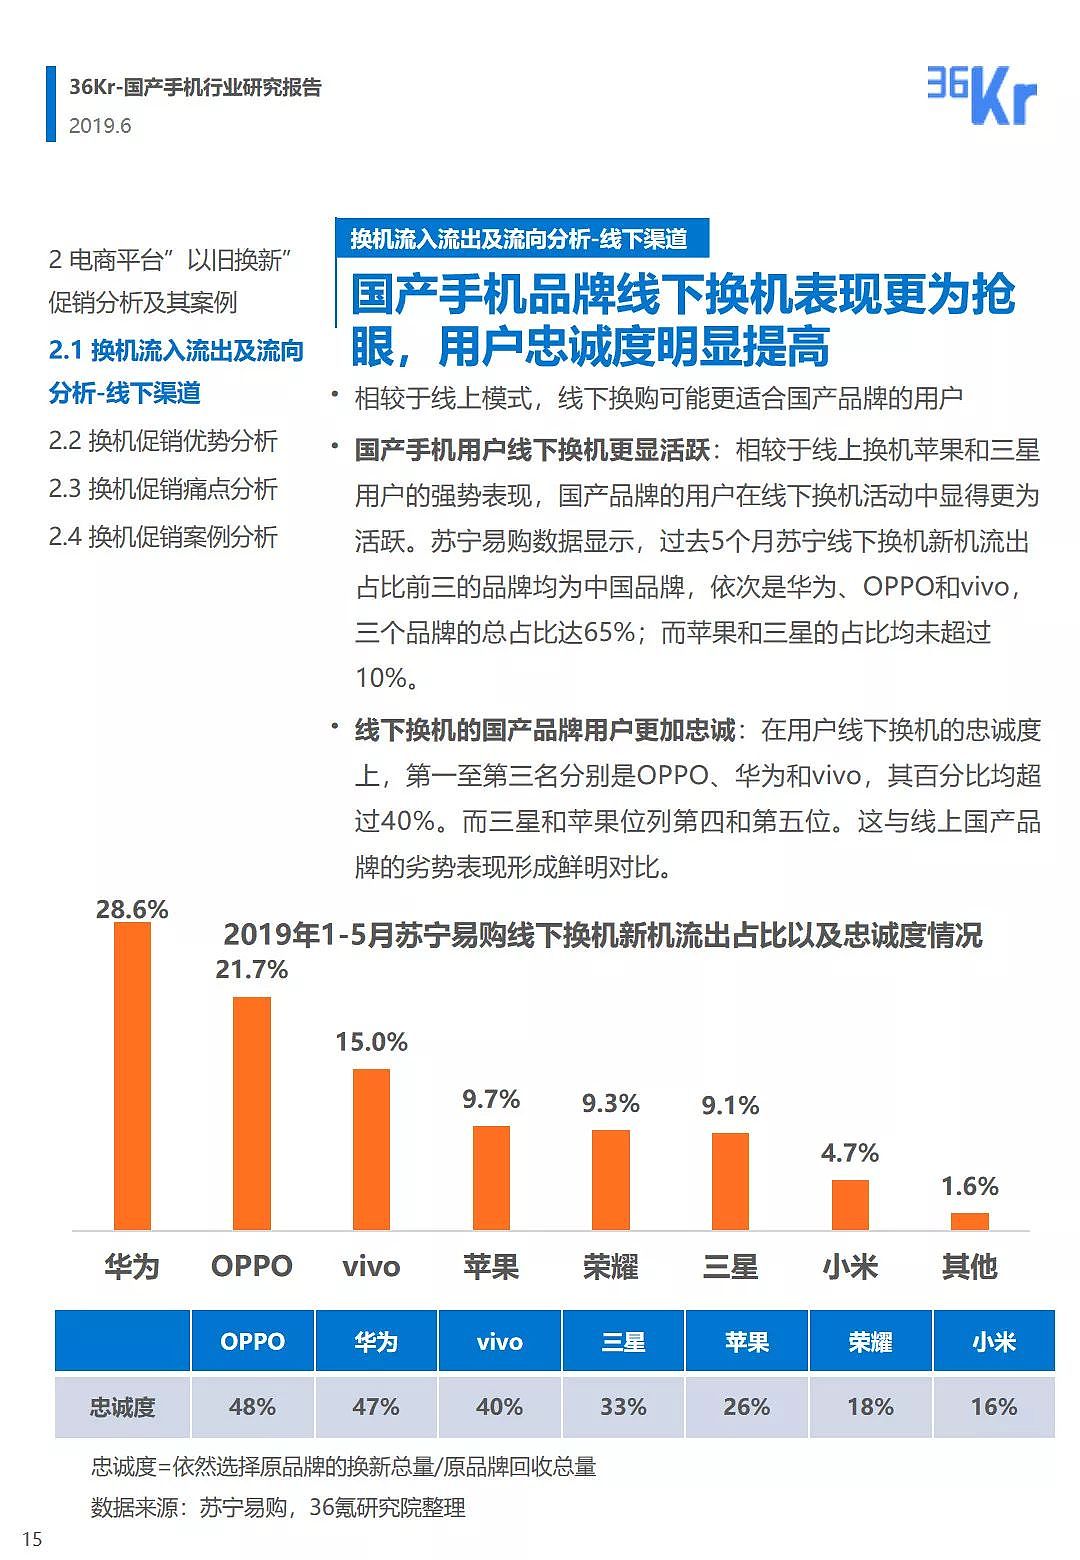 中国手机品牌市场营销研究报告 | 36氪研究 - 16